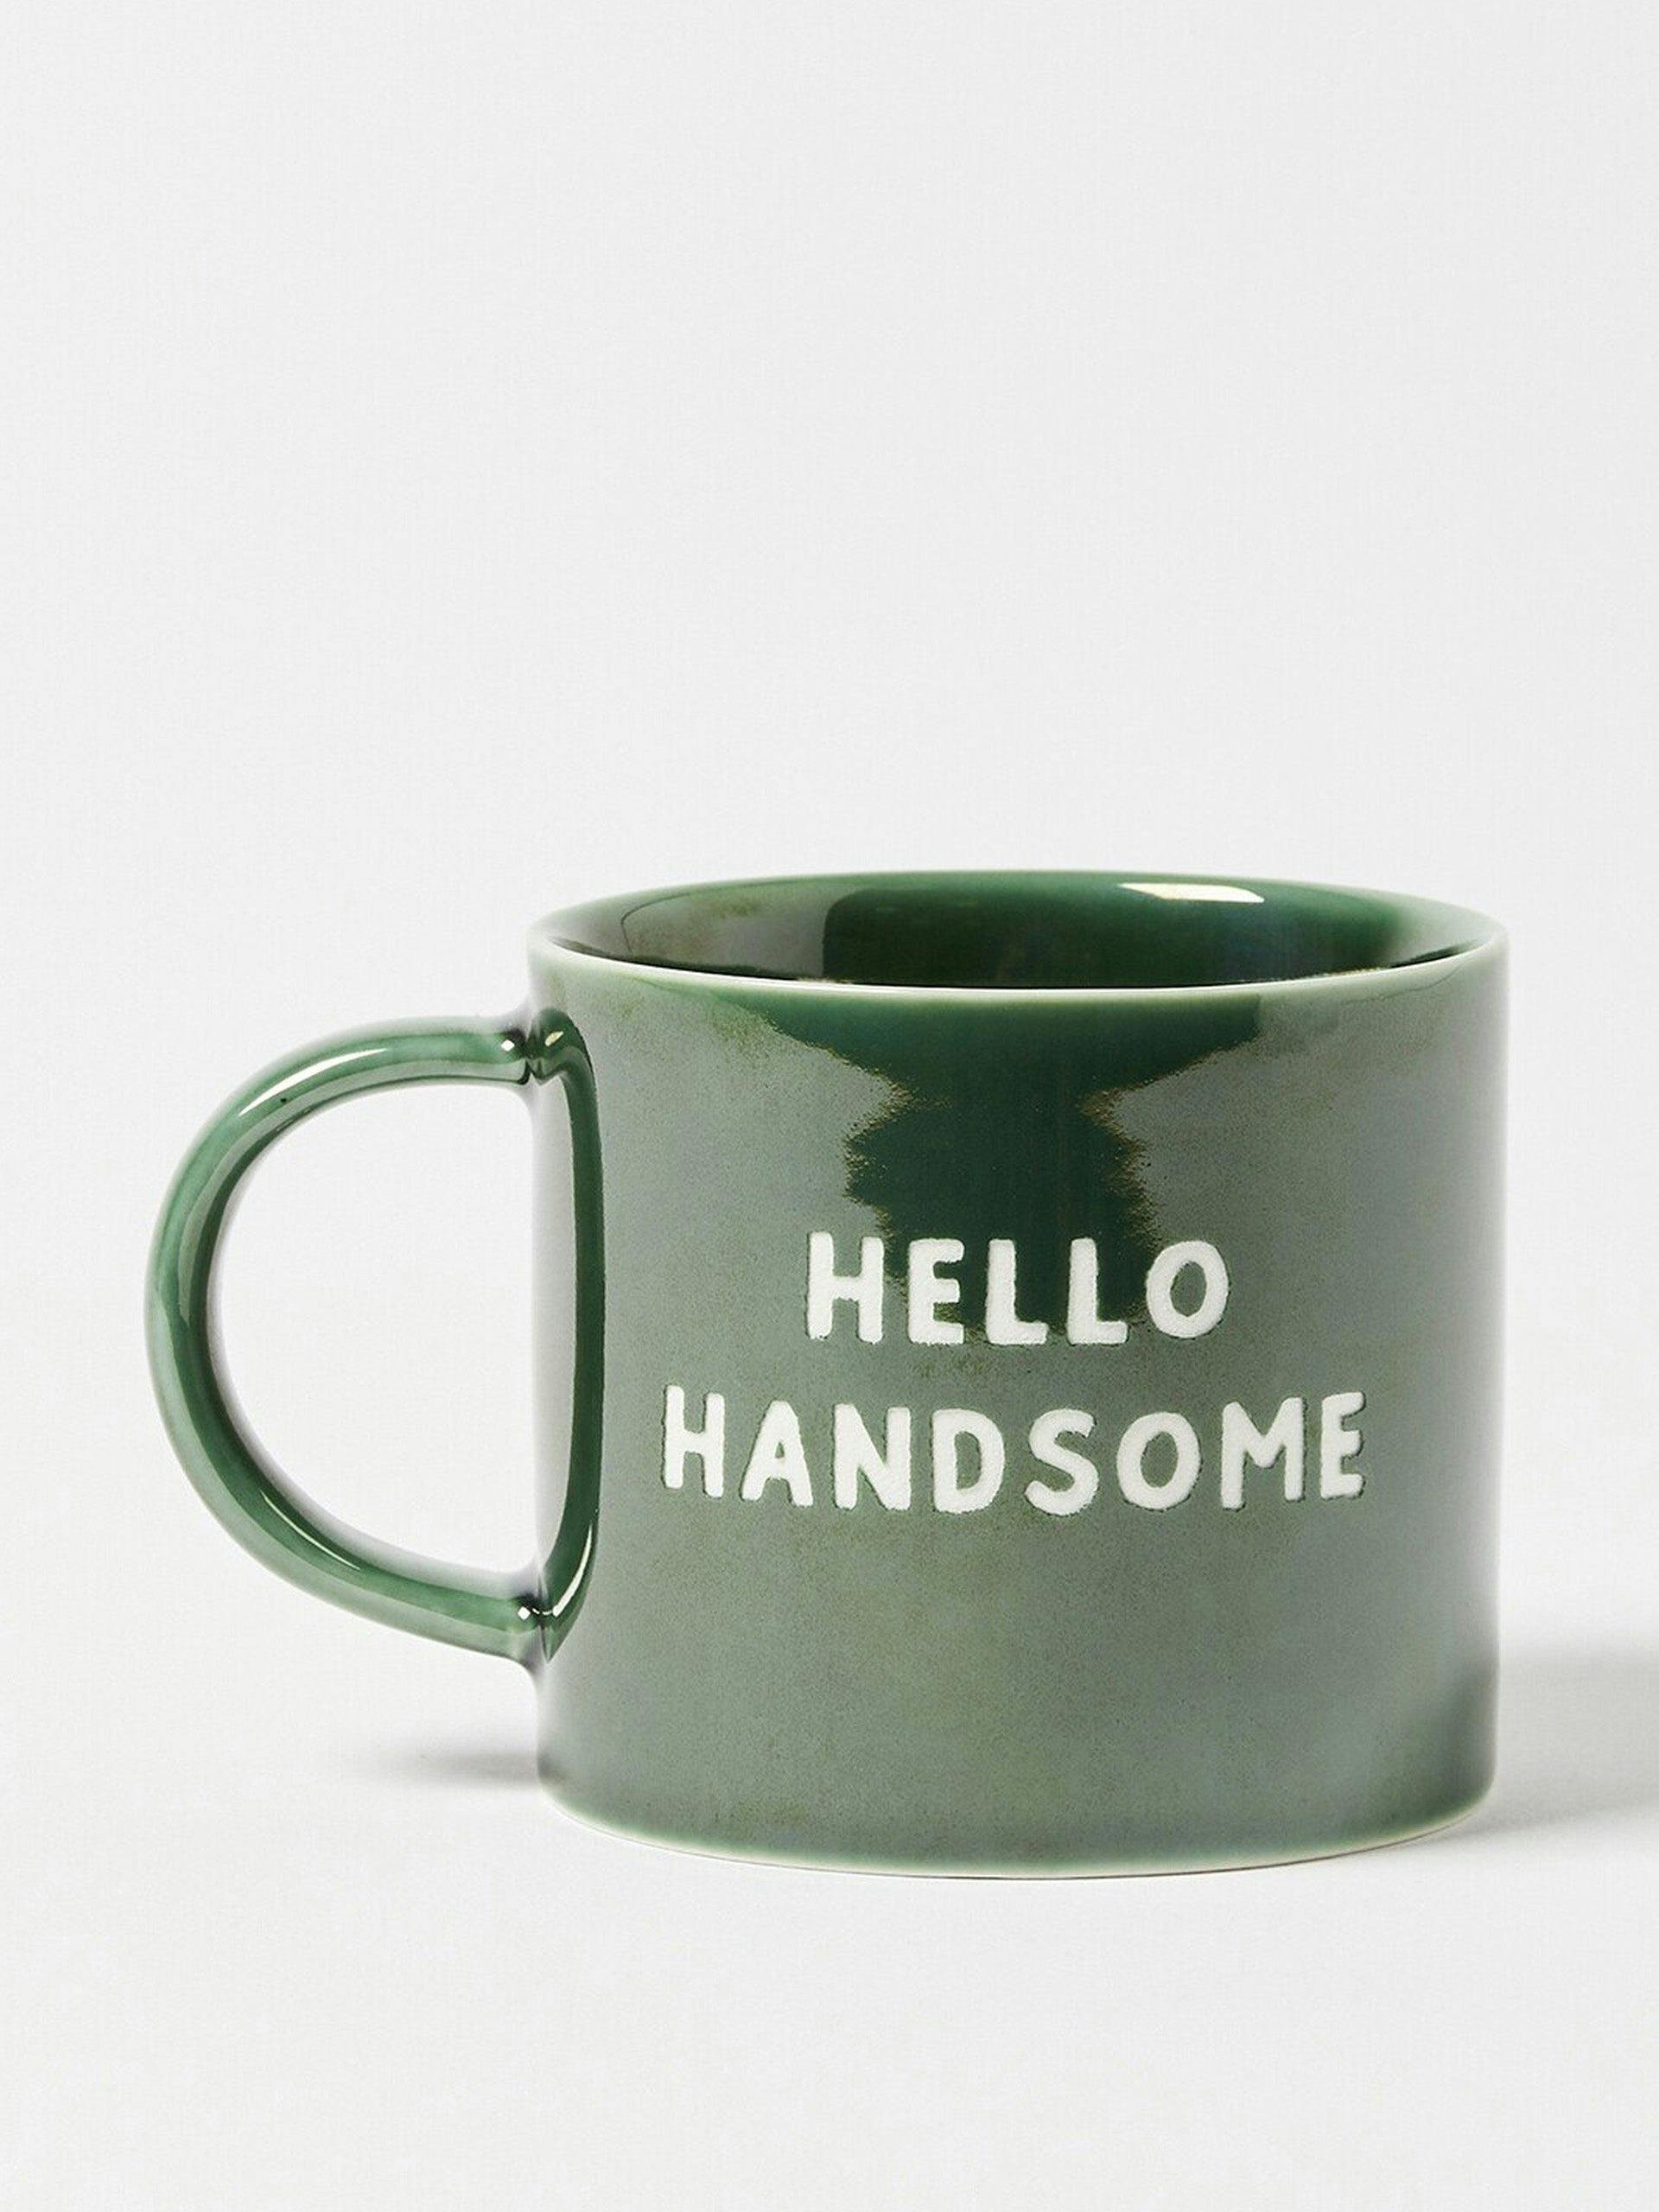 Hello Handsome green ceramic mug